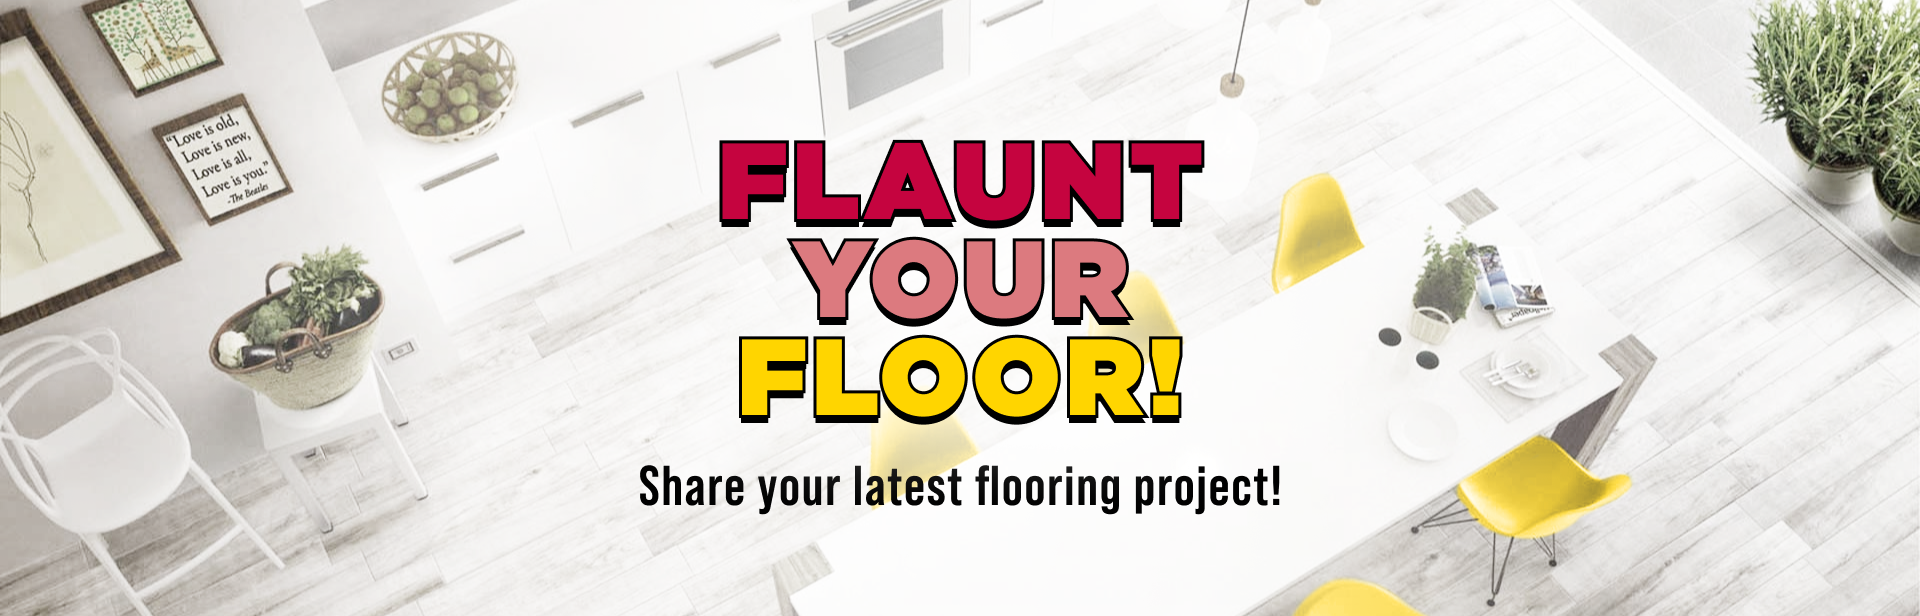 Flaunt Your Floor